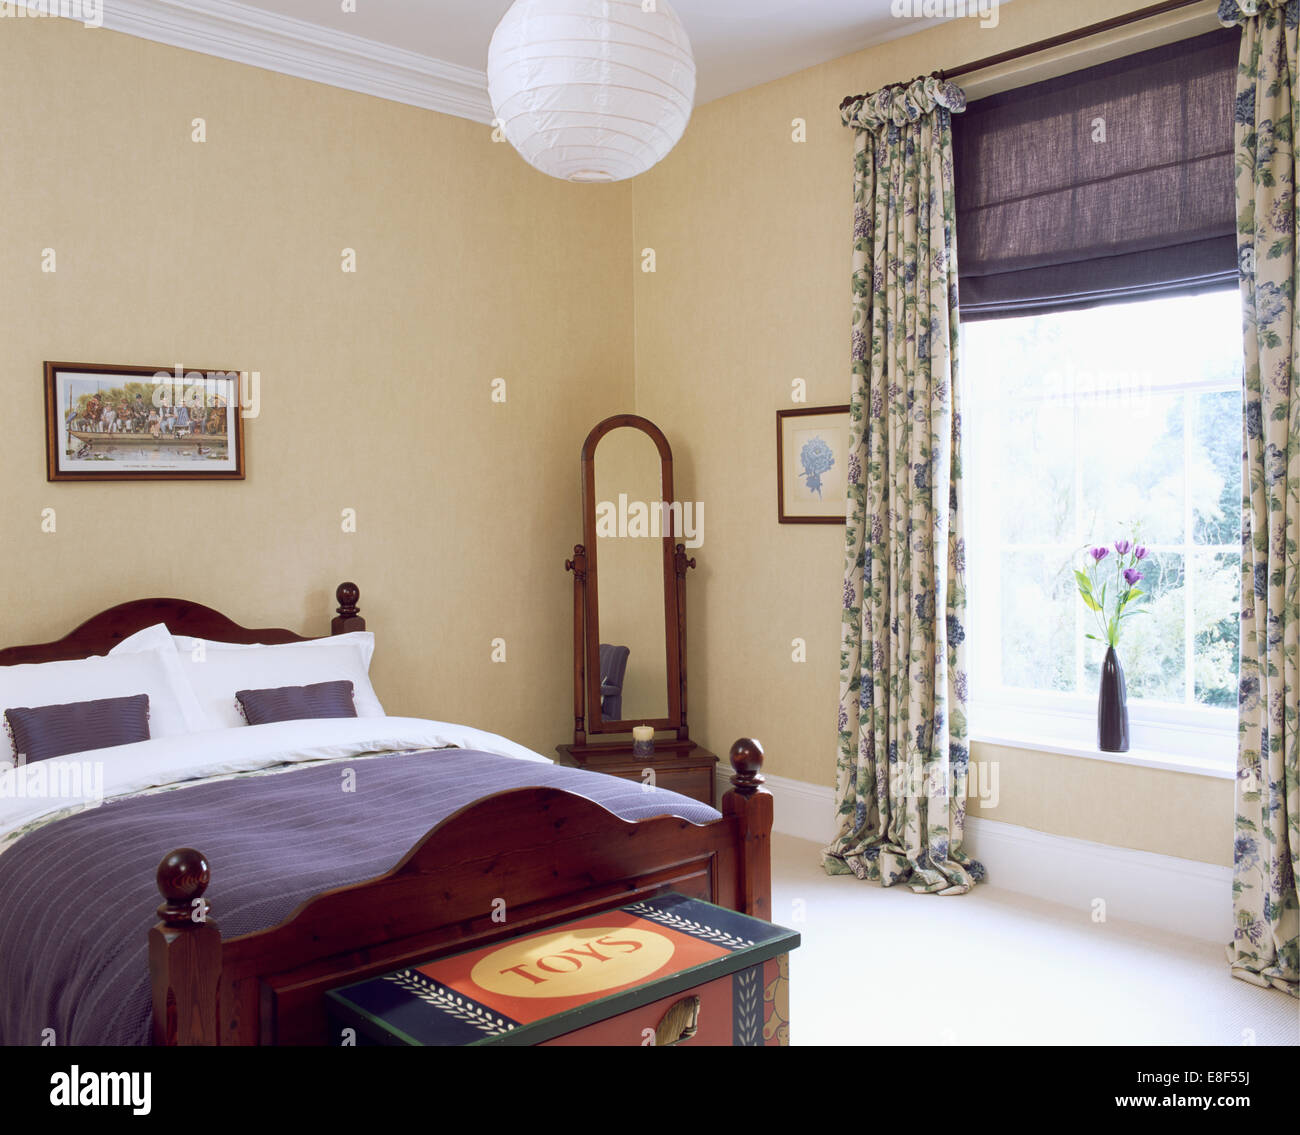 Japanpapier Schatten auf Deckenleuchte in Schlafzimmer mit Cheval Spiegel und Fenster mit blau, die blinde und Blumen drapiert Stockfoto